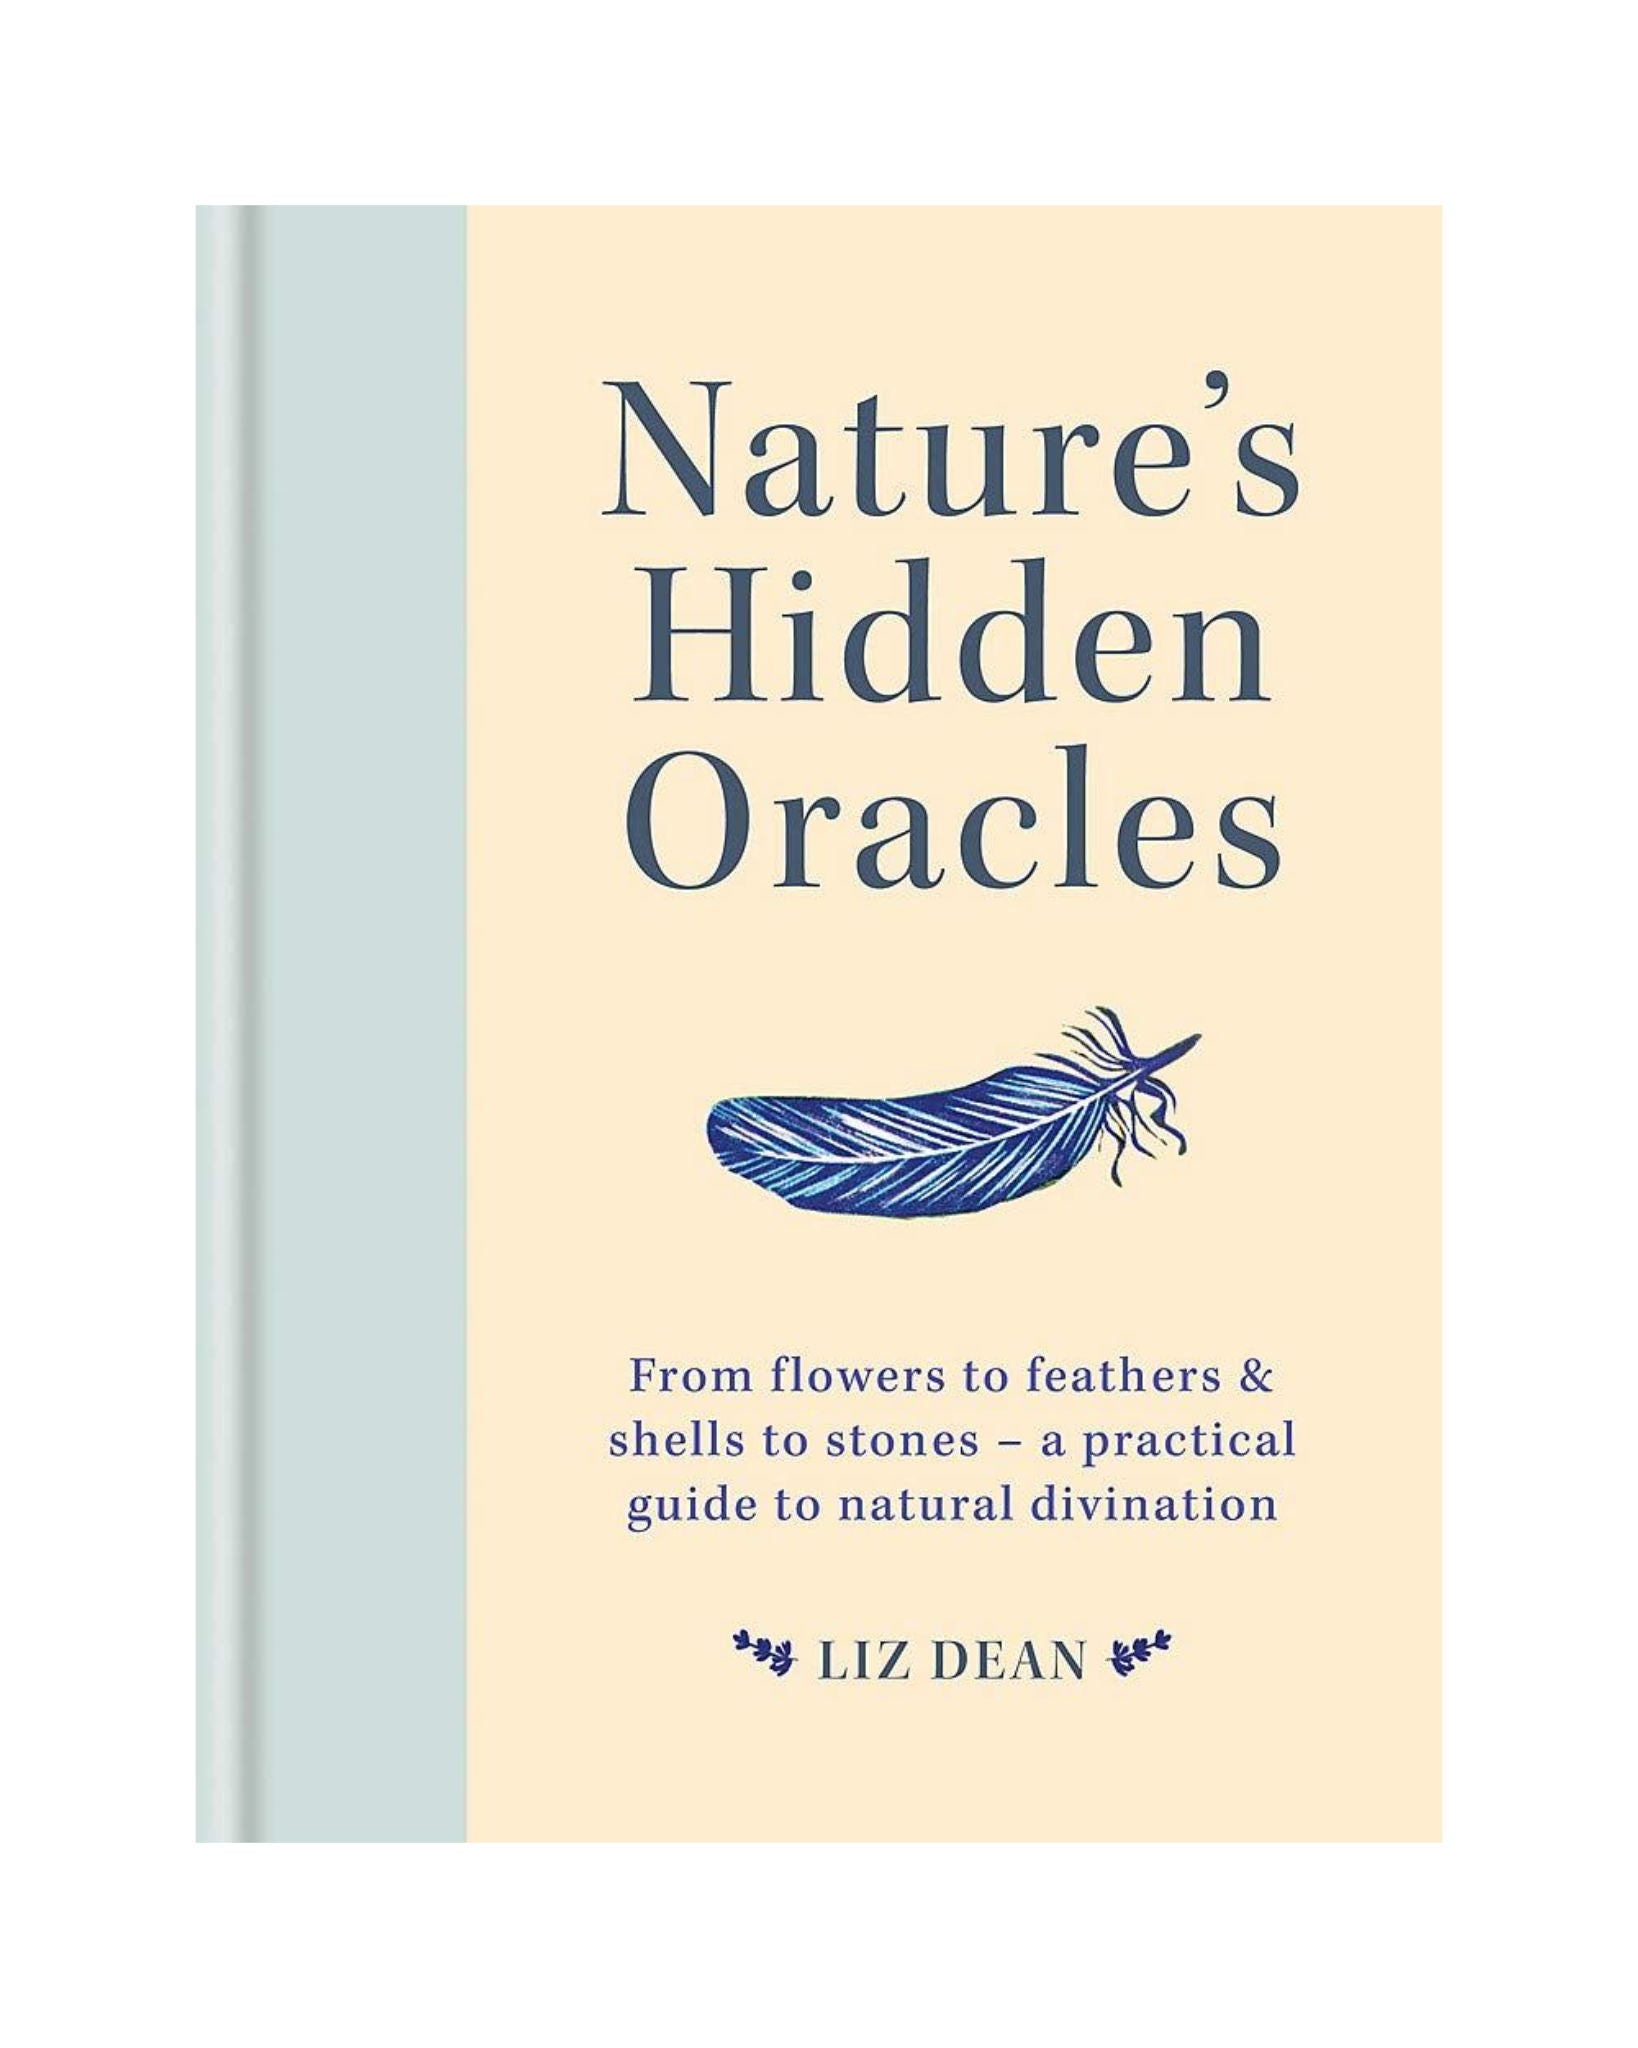 Natures Hidden Oracles